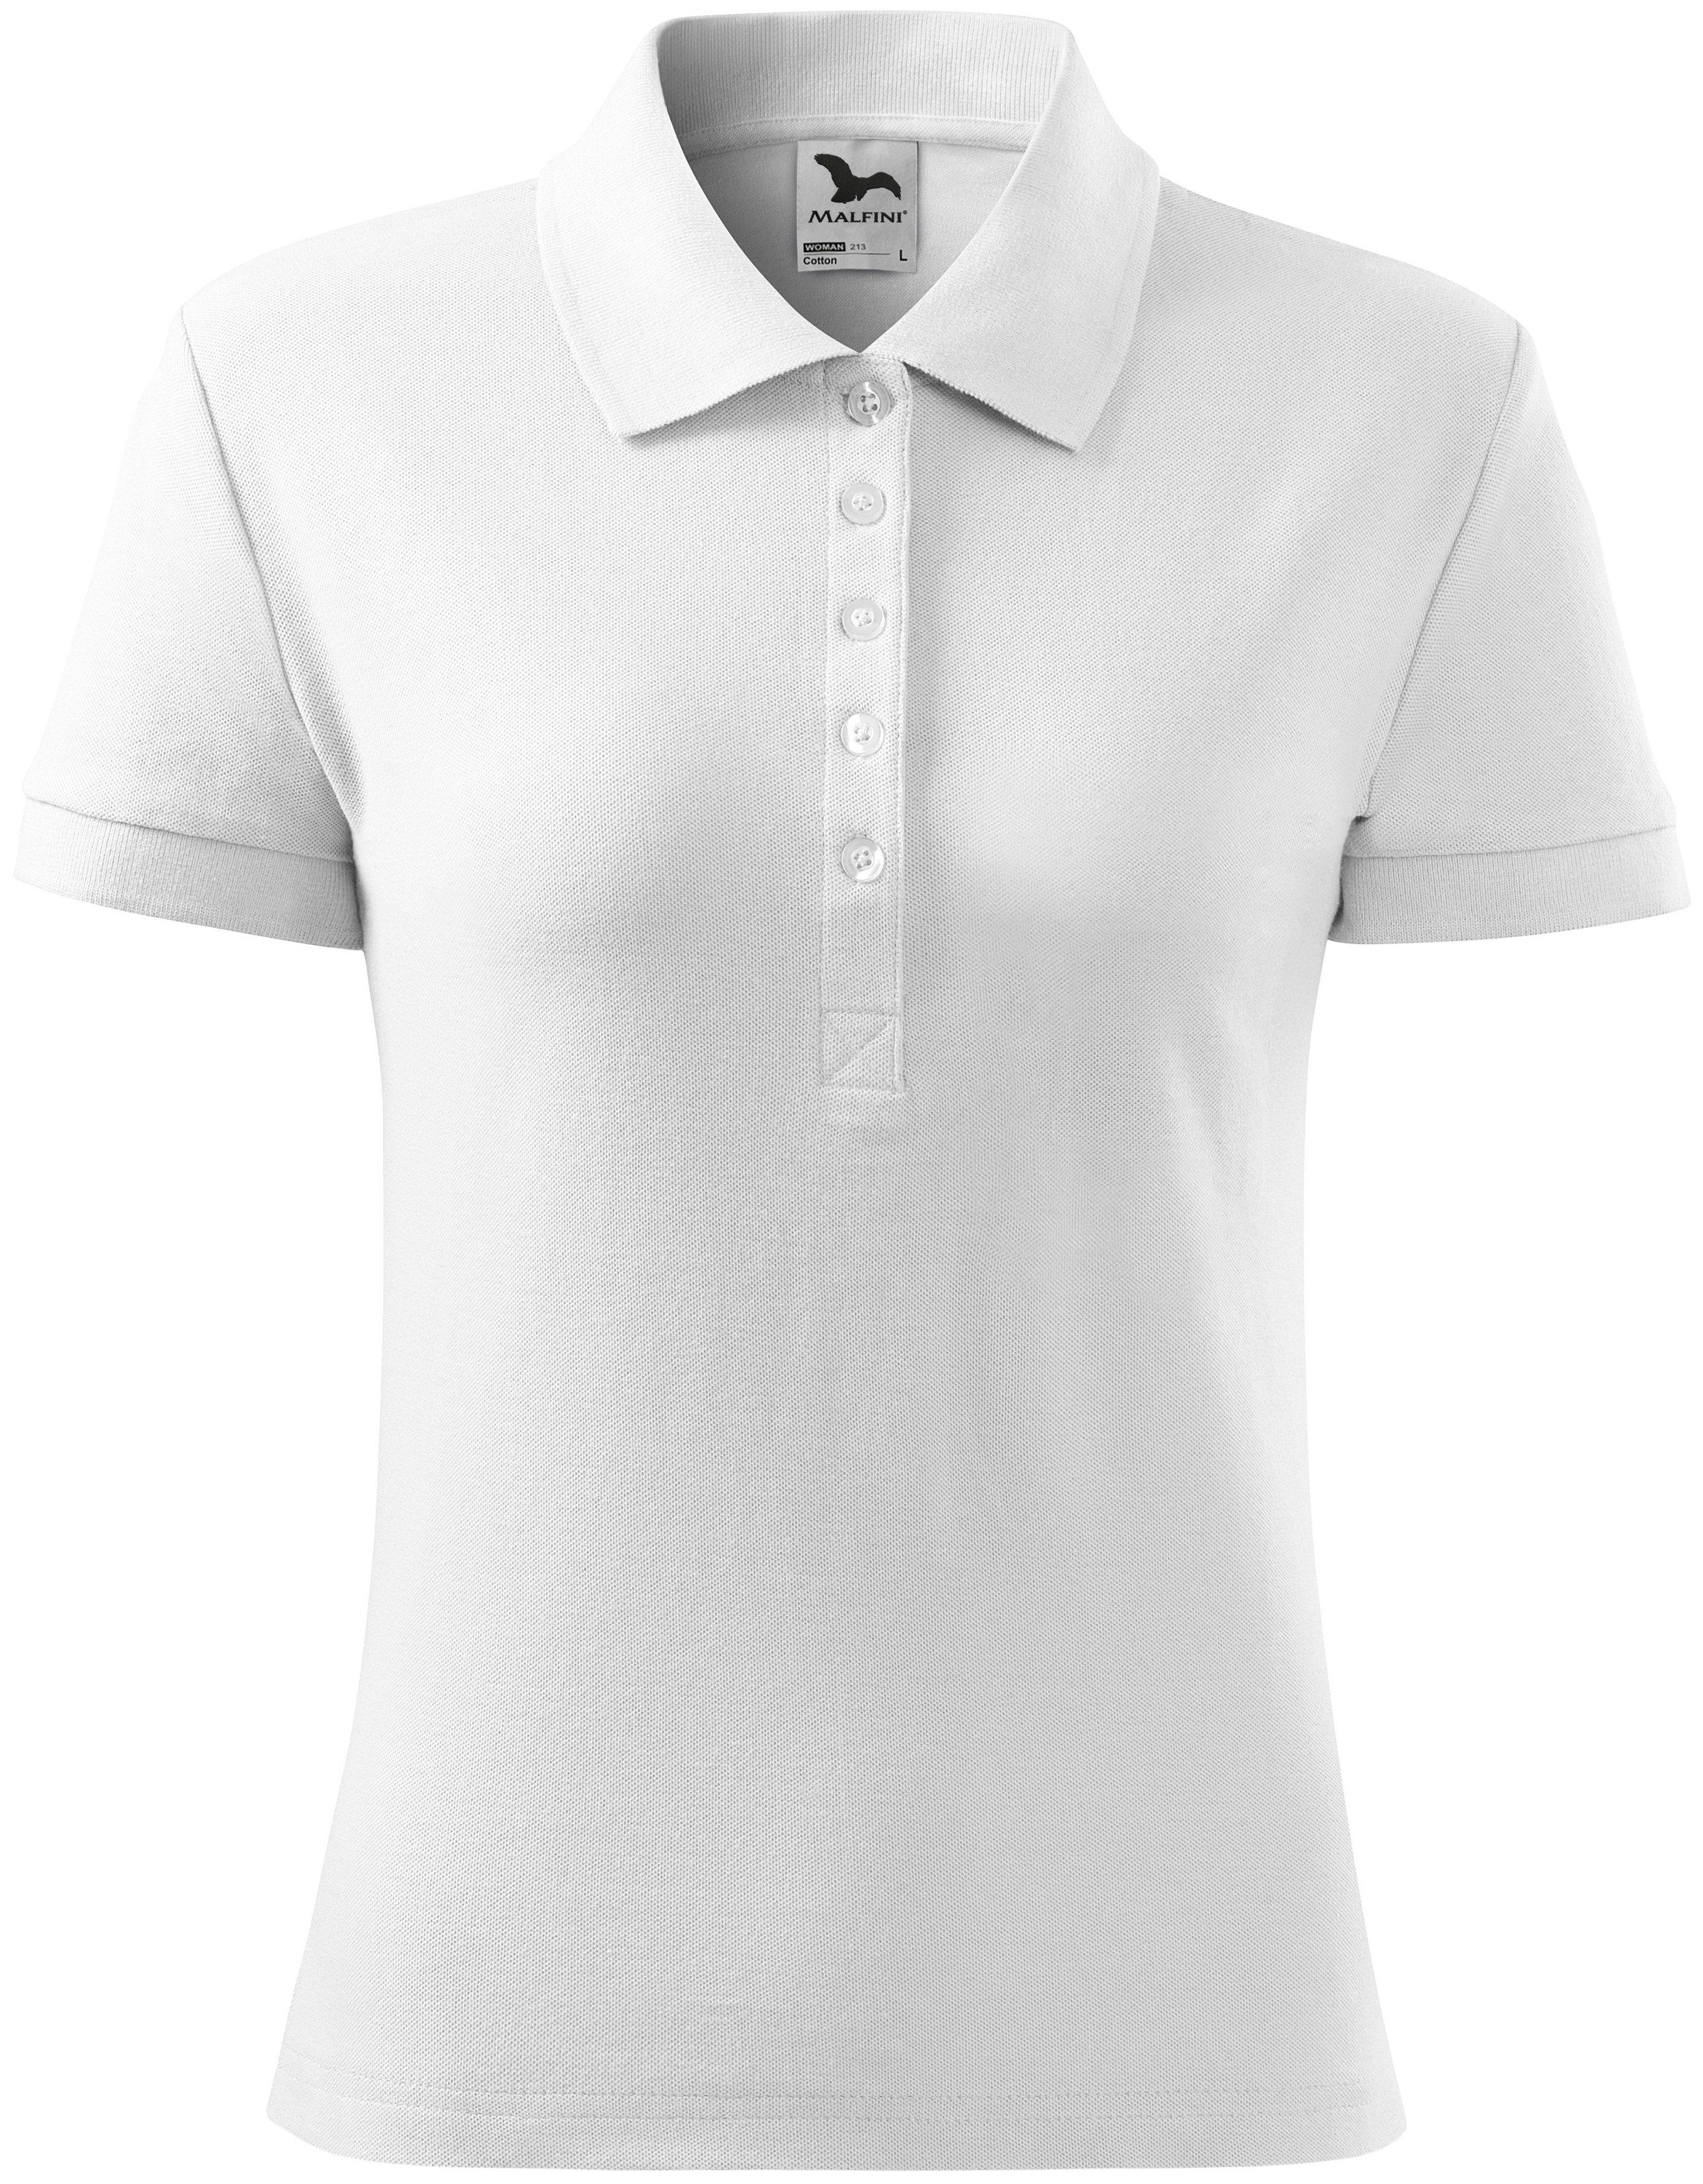 Γυναικείο απλό πουκάμισο πόλο, λευκό, XS